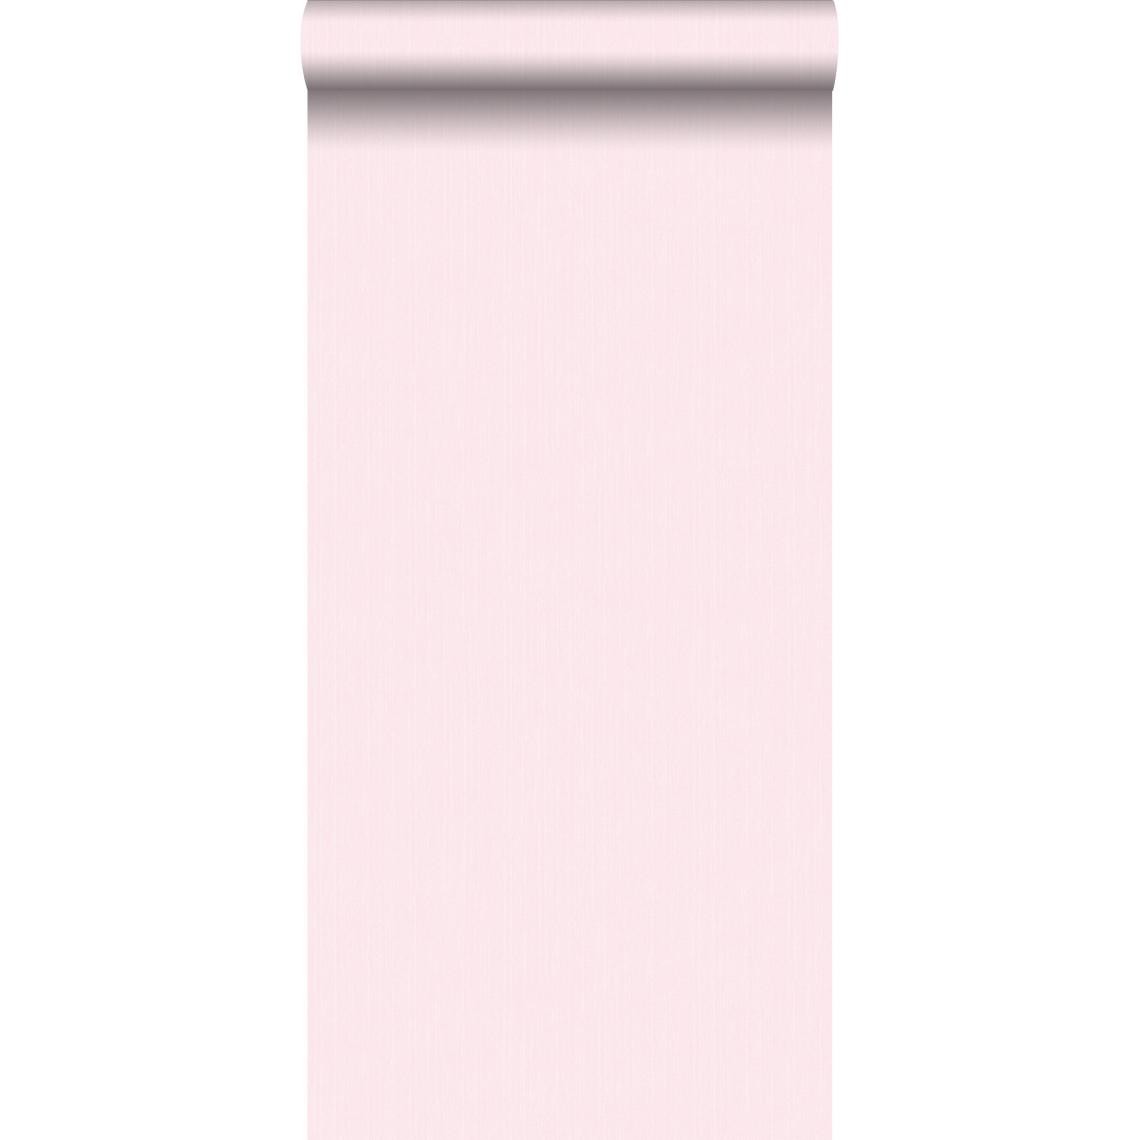 ESTAhome - ESTAhome papier peint uni avec structure en denim jeans rose clair - 148703 - 0.53 x 10.05 m - Papier peint